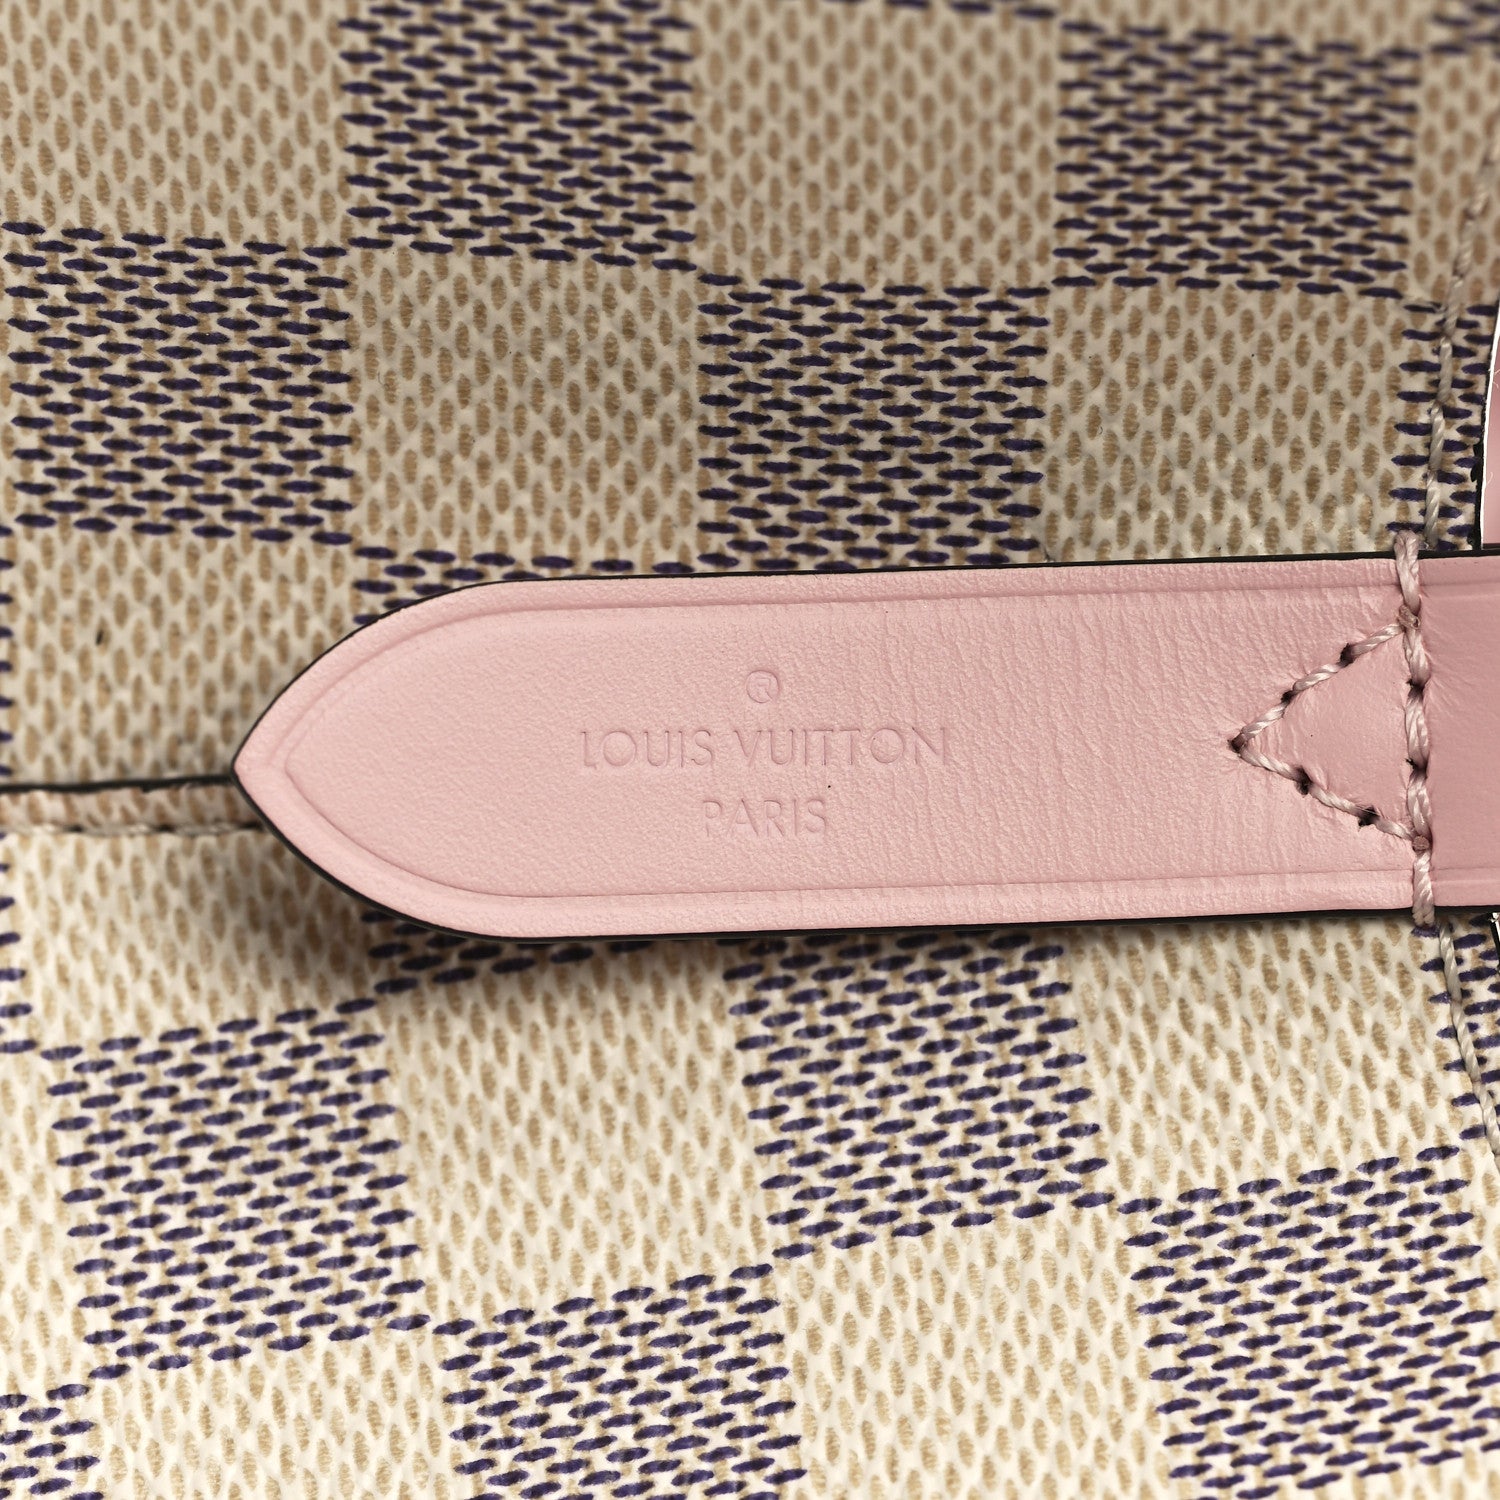 New Louis Vuitton Damier Azur NeoNoe mm Eau de Rose